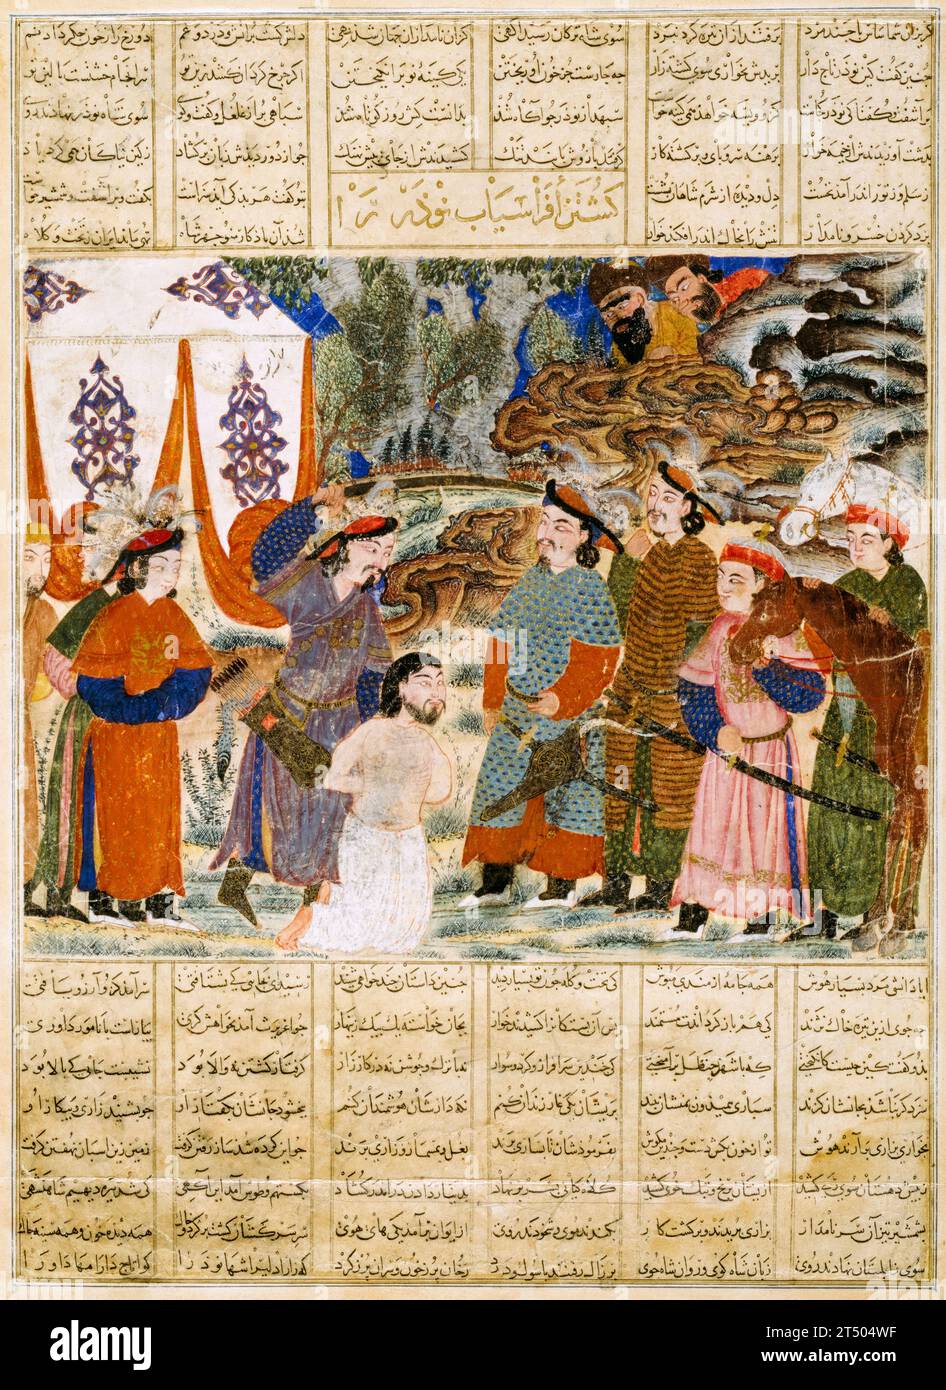 Siglo XIV, Arte persa, Afrasiab Matando a Naudar, una publicación del Gran Shahnameh mongol (Libro de los Reyes), pintura de acuarela manuscrita iluminada con tinta, oro y plata, alrededor de 1335 Foto de stock